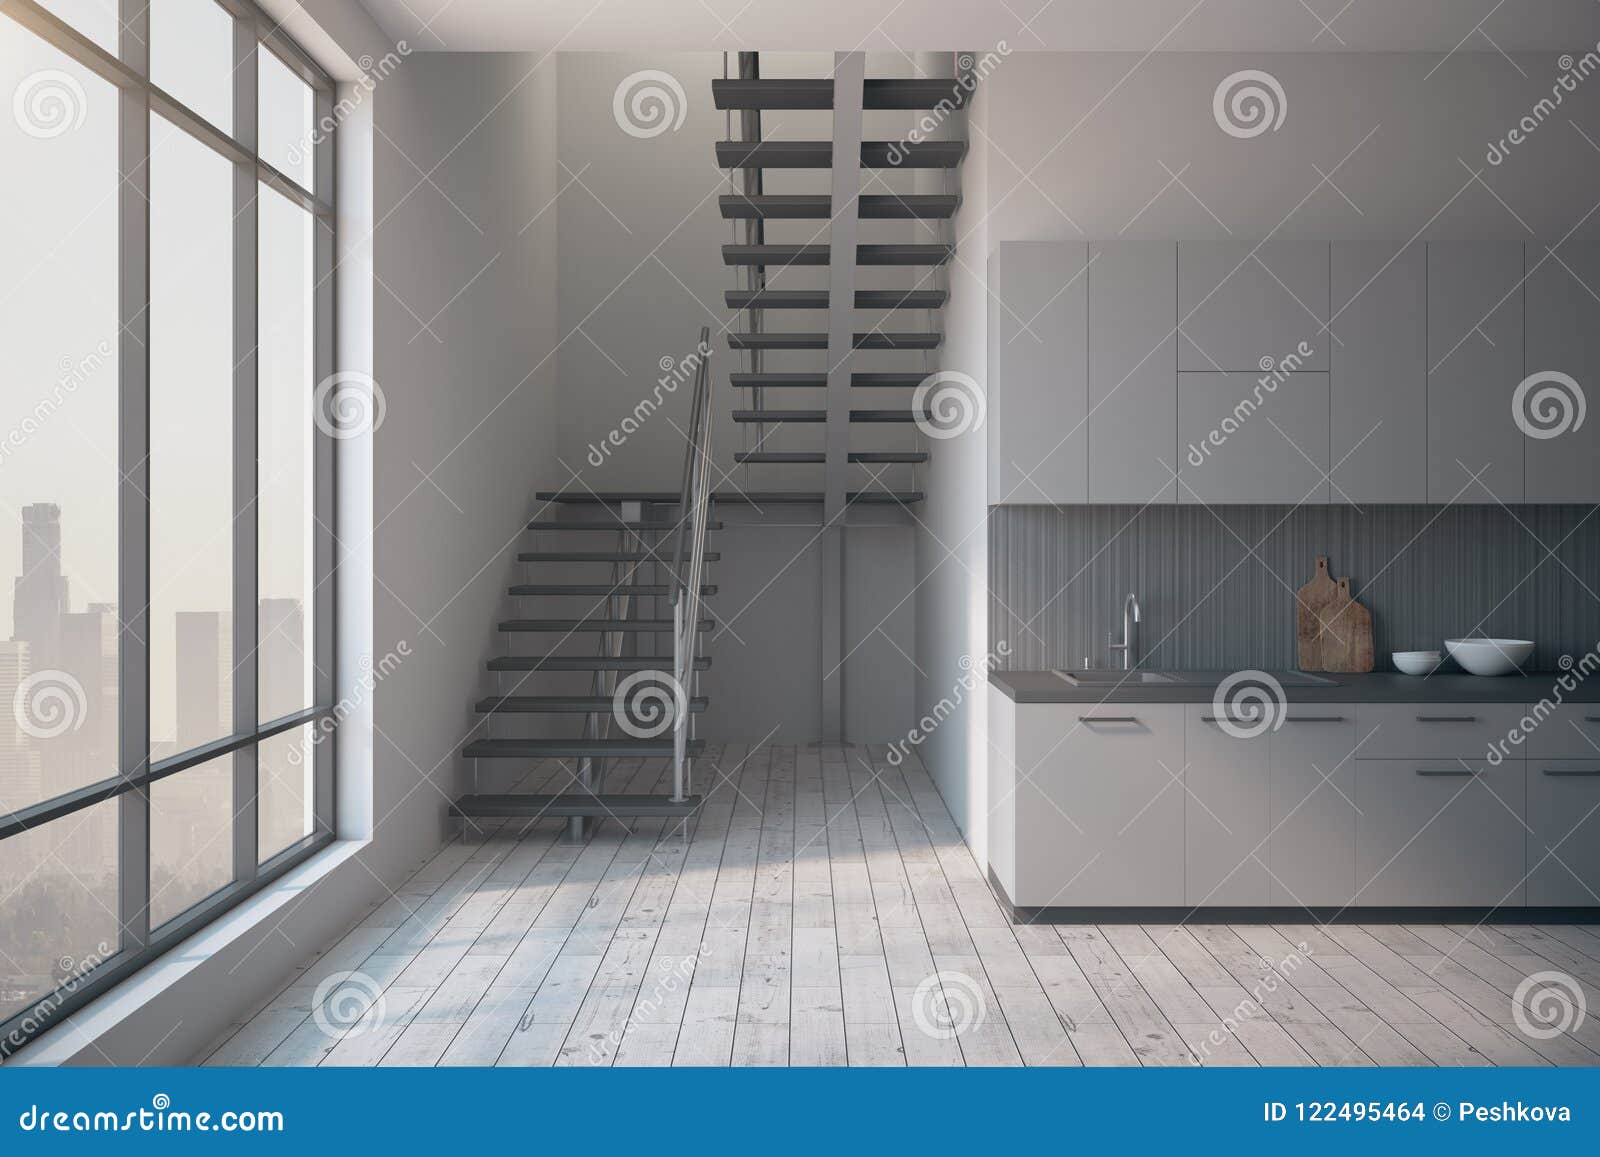 Beautiful Loft Kitchen Interior Stock Illustration